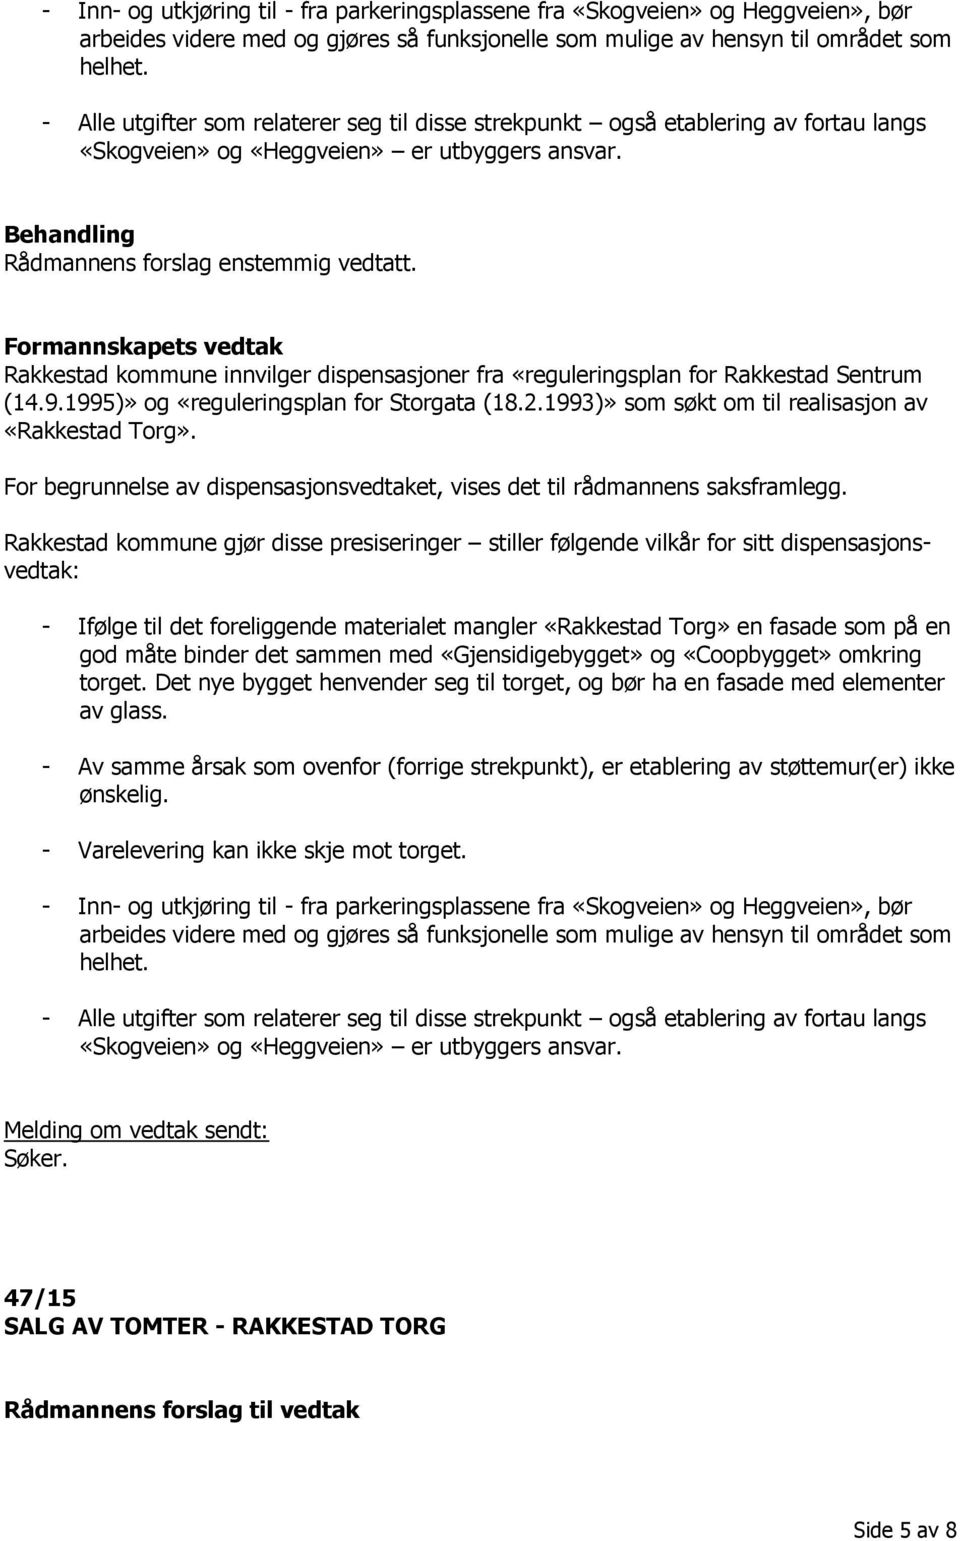 Formannskapets vedtak Rakkestad kommune innvilger dispensasjoner fra «reguleringsplan for Rakkestad Sentrum (14.9.1995)» og «reguleringsplan for Storgata (18.2.